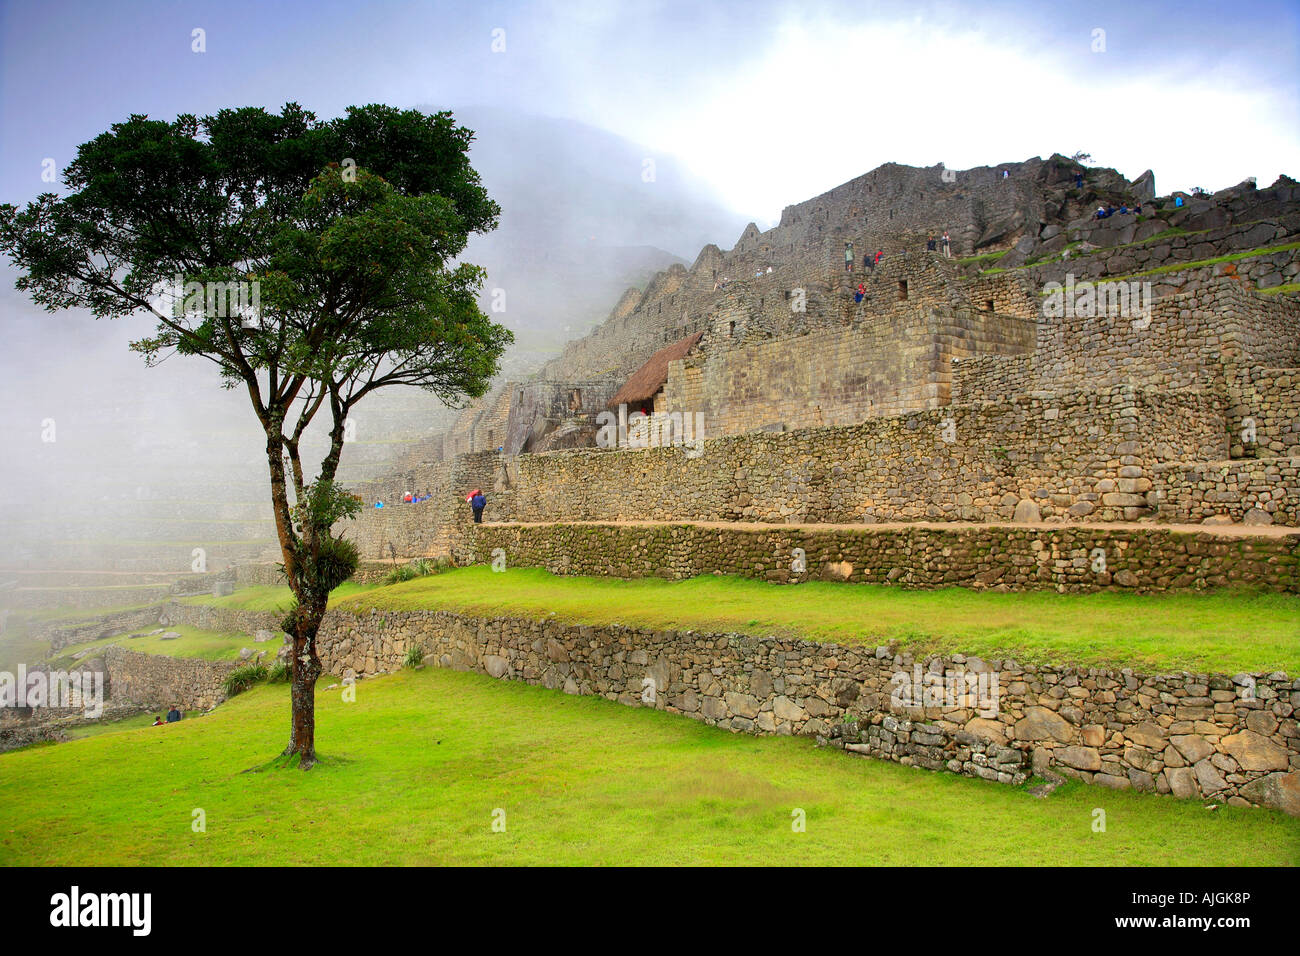 Arbre dans la brume du matin de secteur urbain du site du patrimoine mondial de l'Andes Pérou Machu Picchu Amérique du Sud Banque D'Images